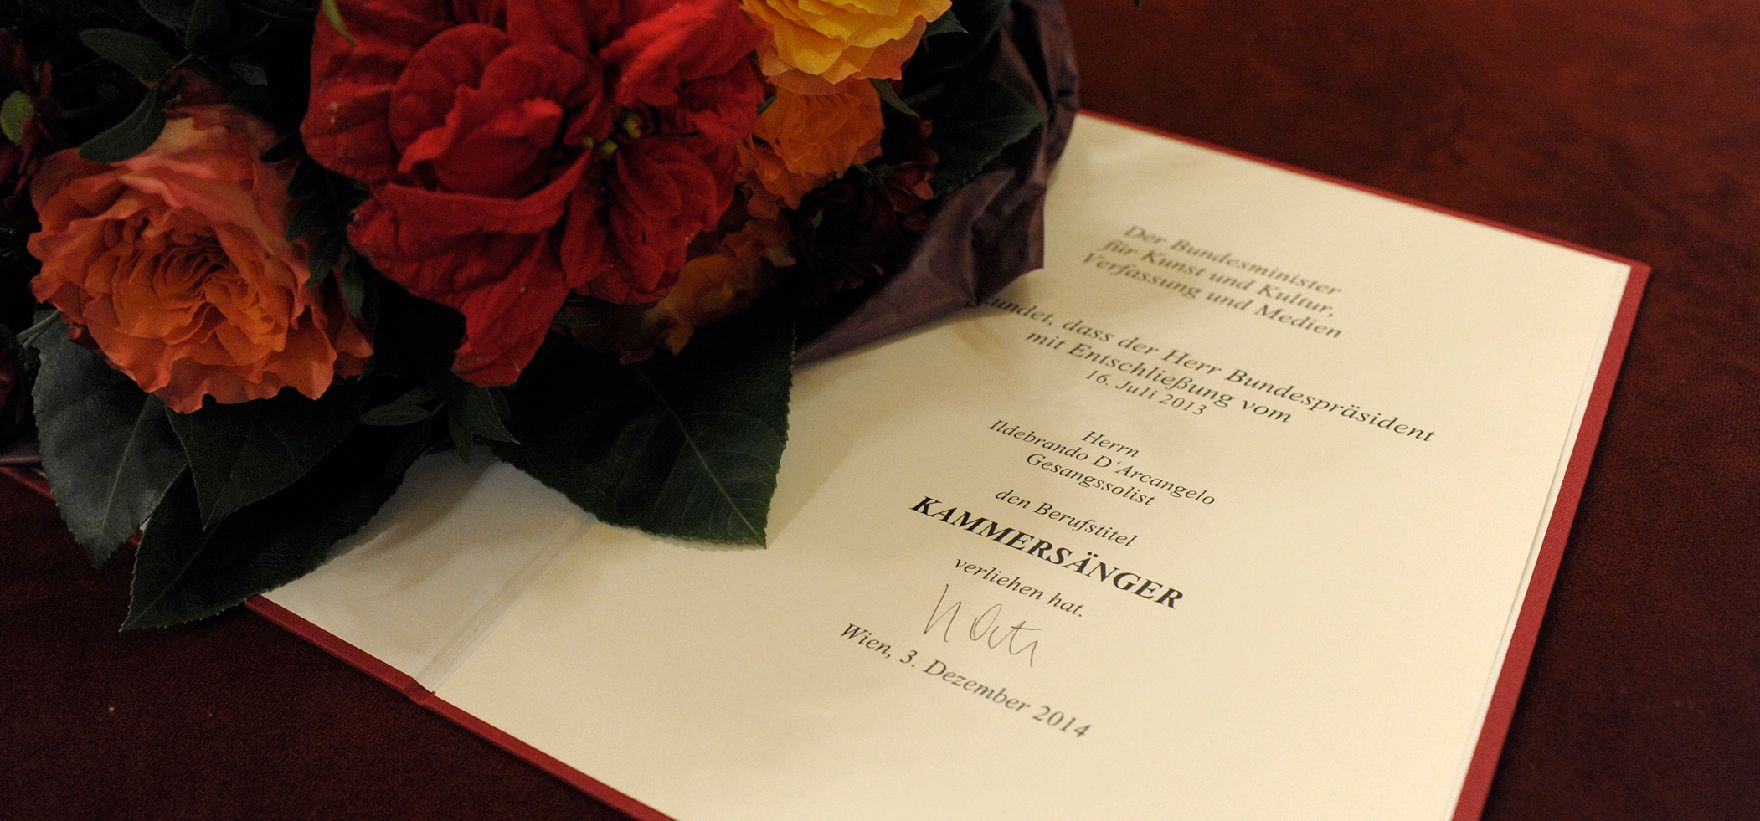 Am 3. Dezember 2014 überreichte Kunst- und Kulturminister Josef Ostermayer die Urkunde, mit der Sänger Ildebrando D’Arcangelo der Berufstitel Kammersänger verliehen wurde.